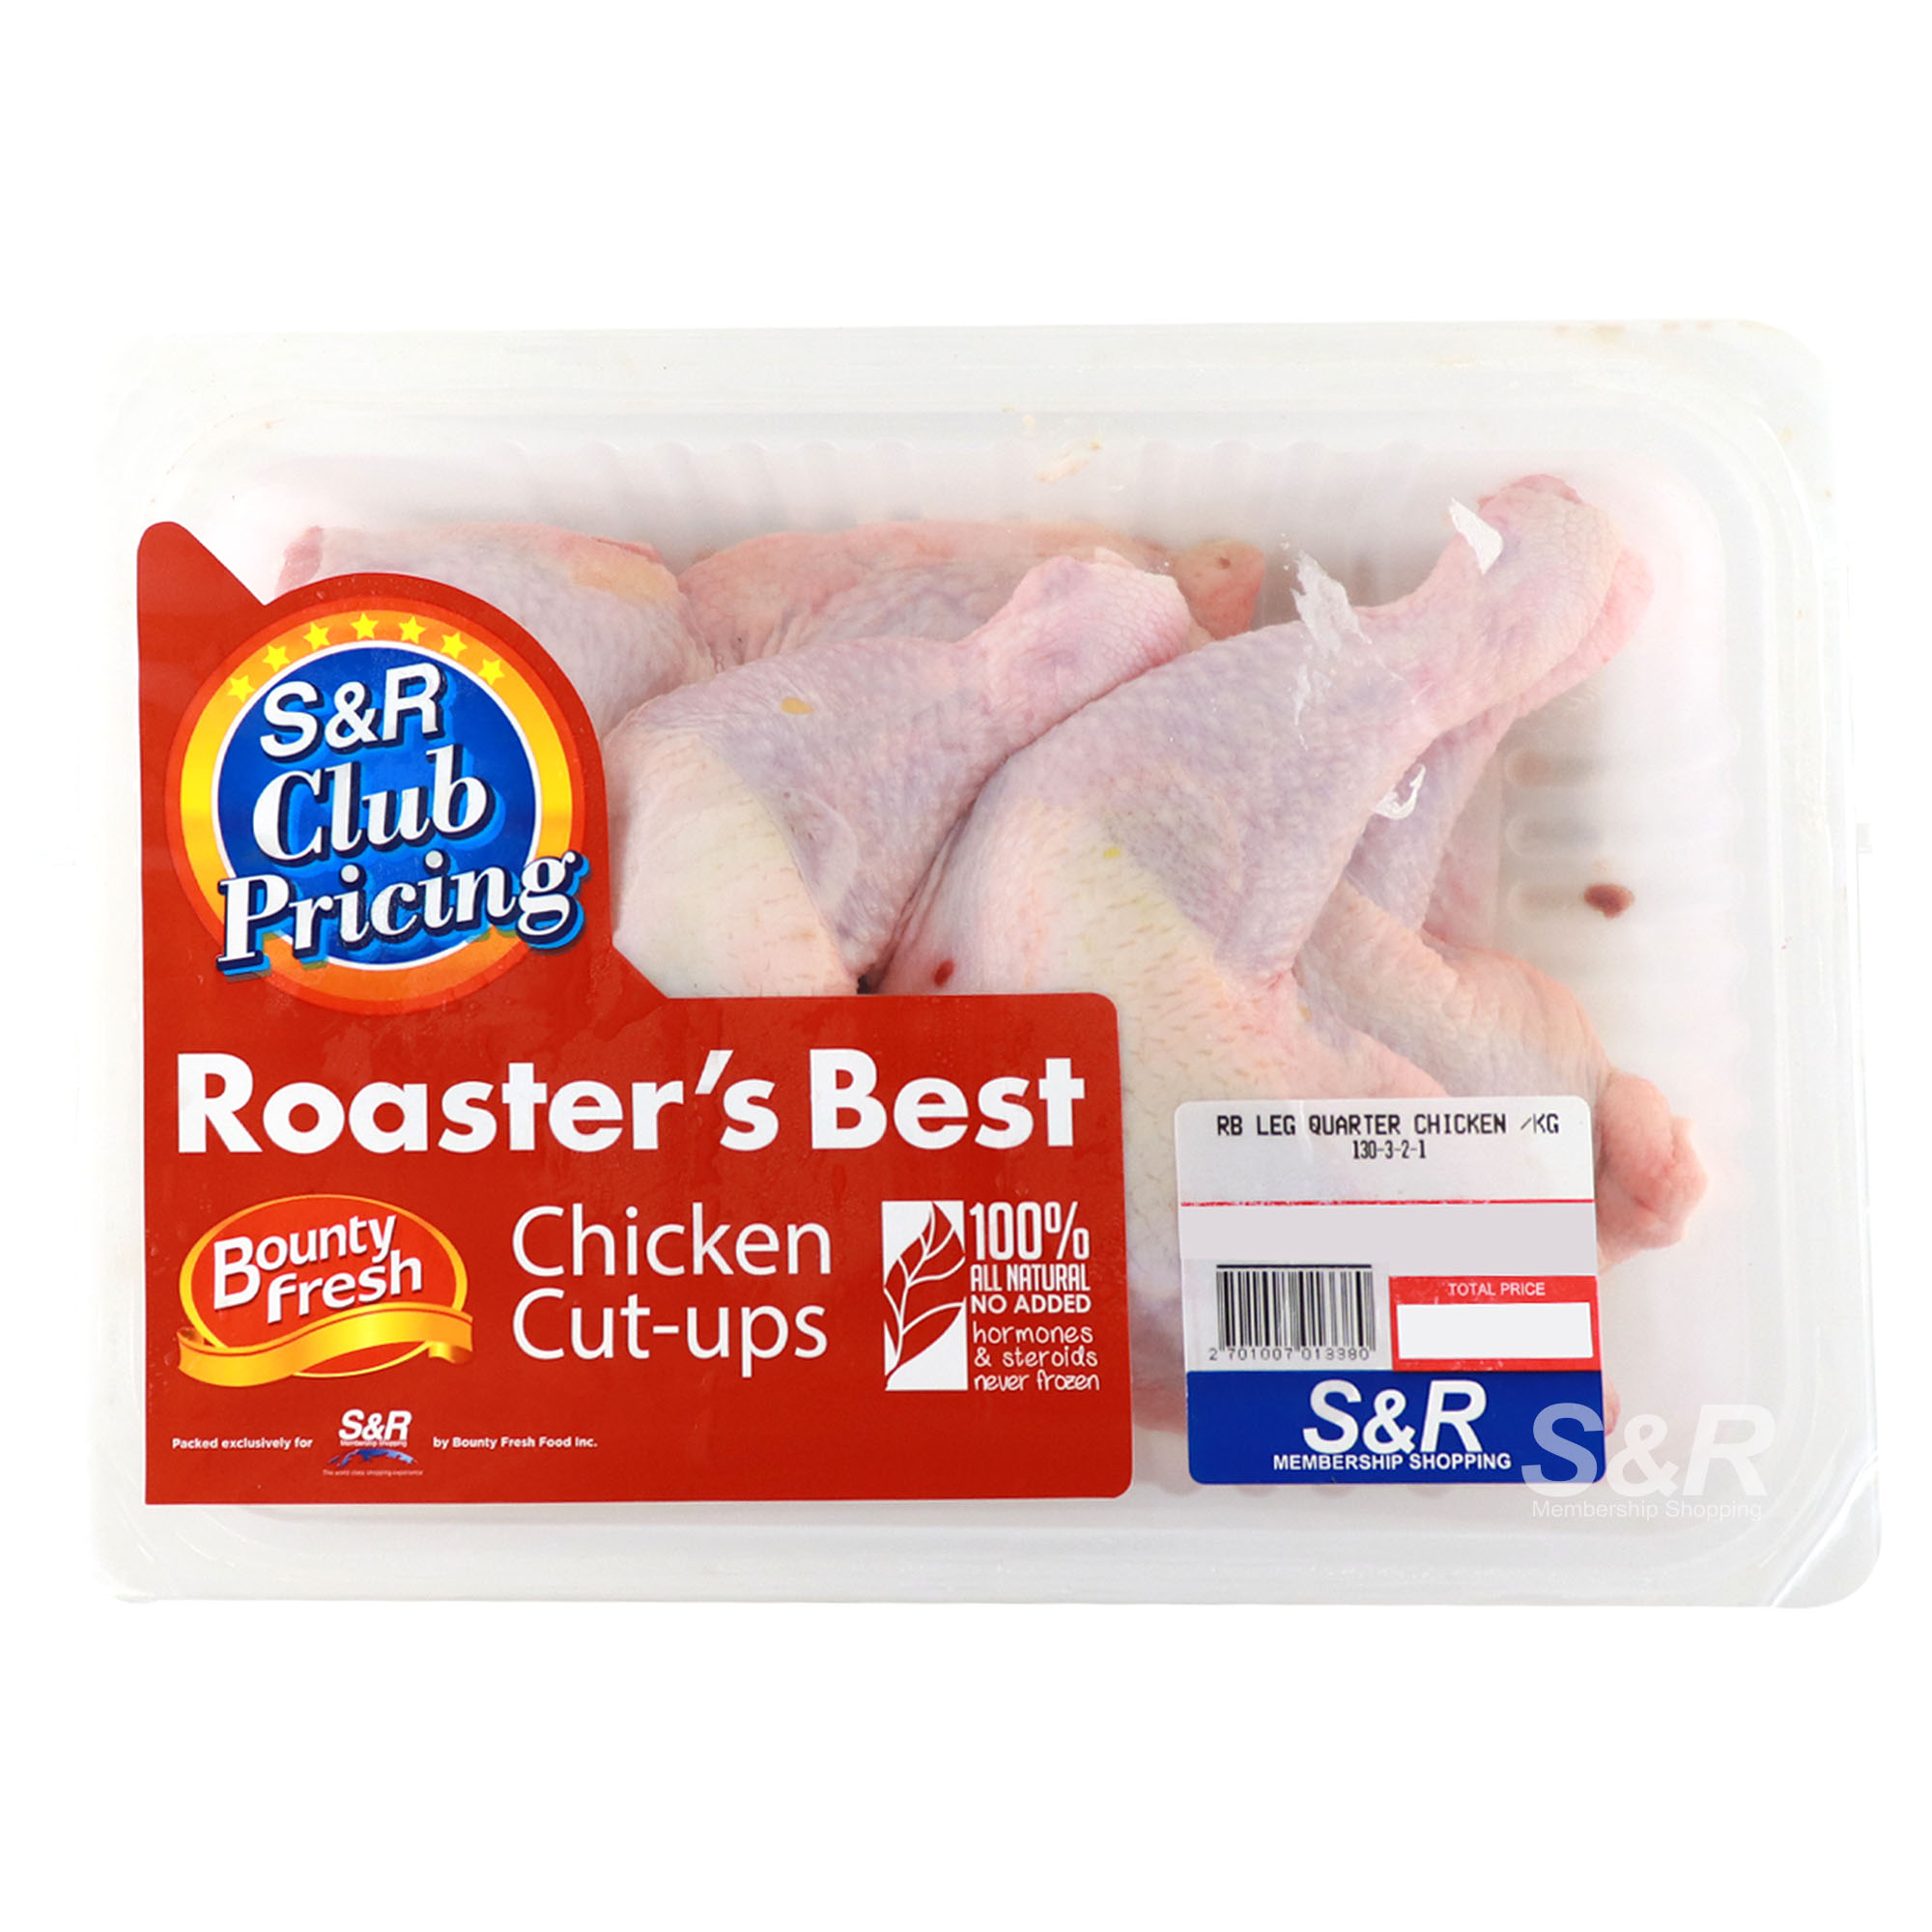 Roaster's Best Chicken Leg Quarter Cut-ups approx. 2.5kg